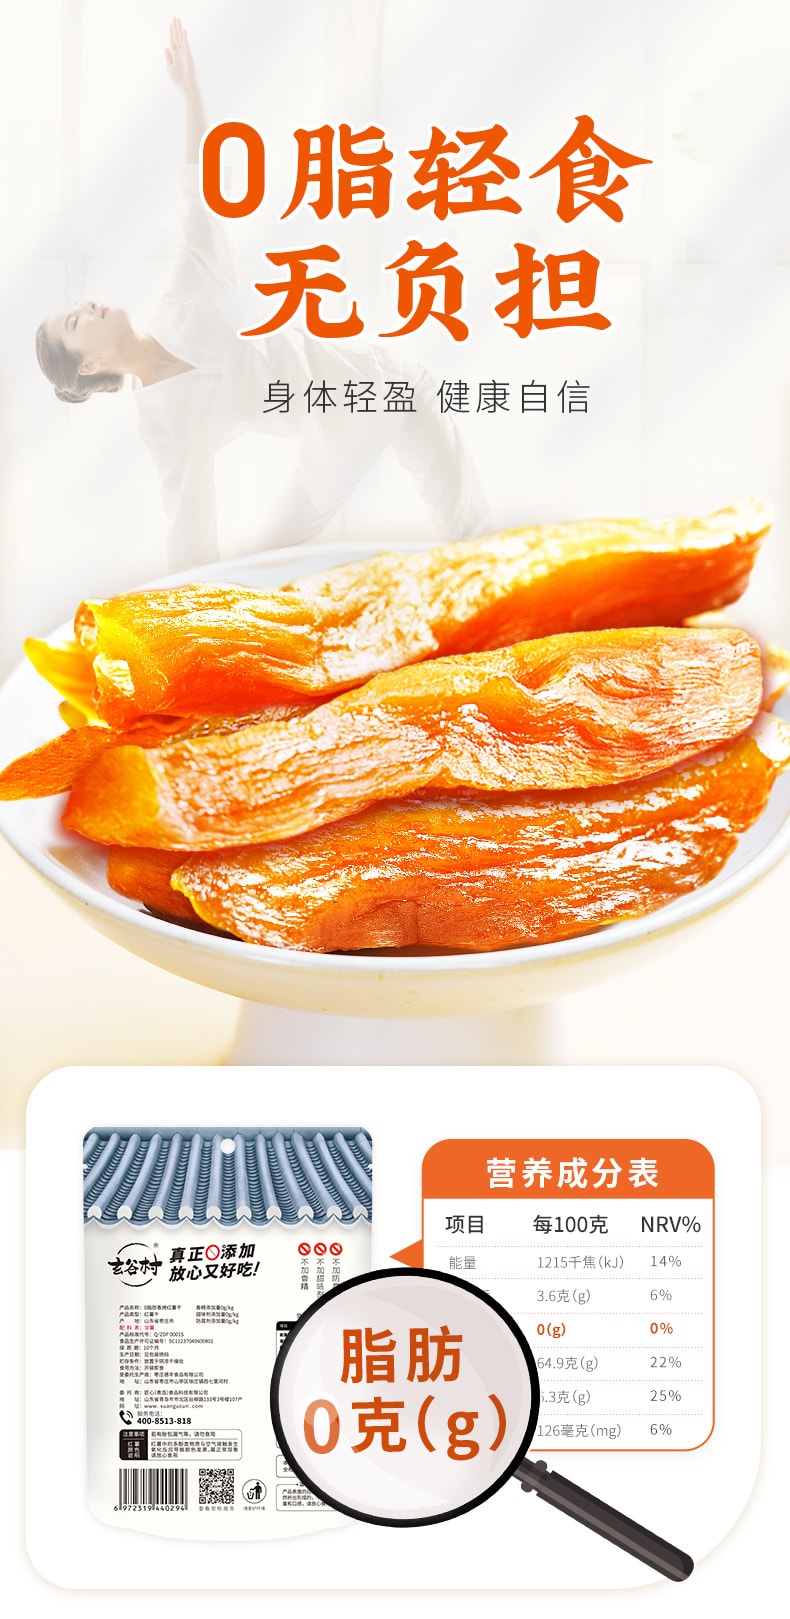 中国 玄谷村 三蒸三烤 0脂肪香烤红薯干 100克 零添加 零蔗糖 养生轻食代餐 全家放心吃